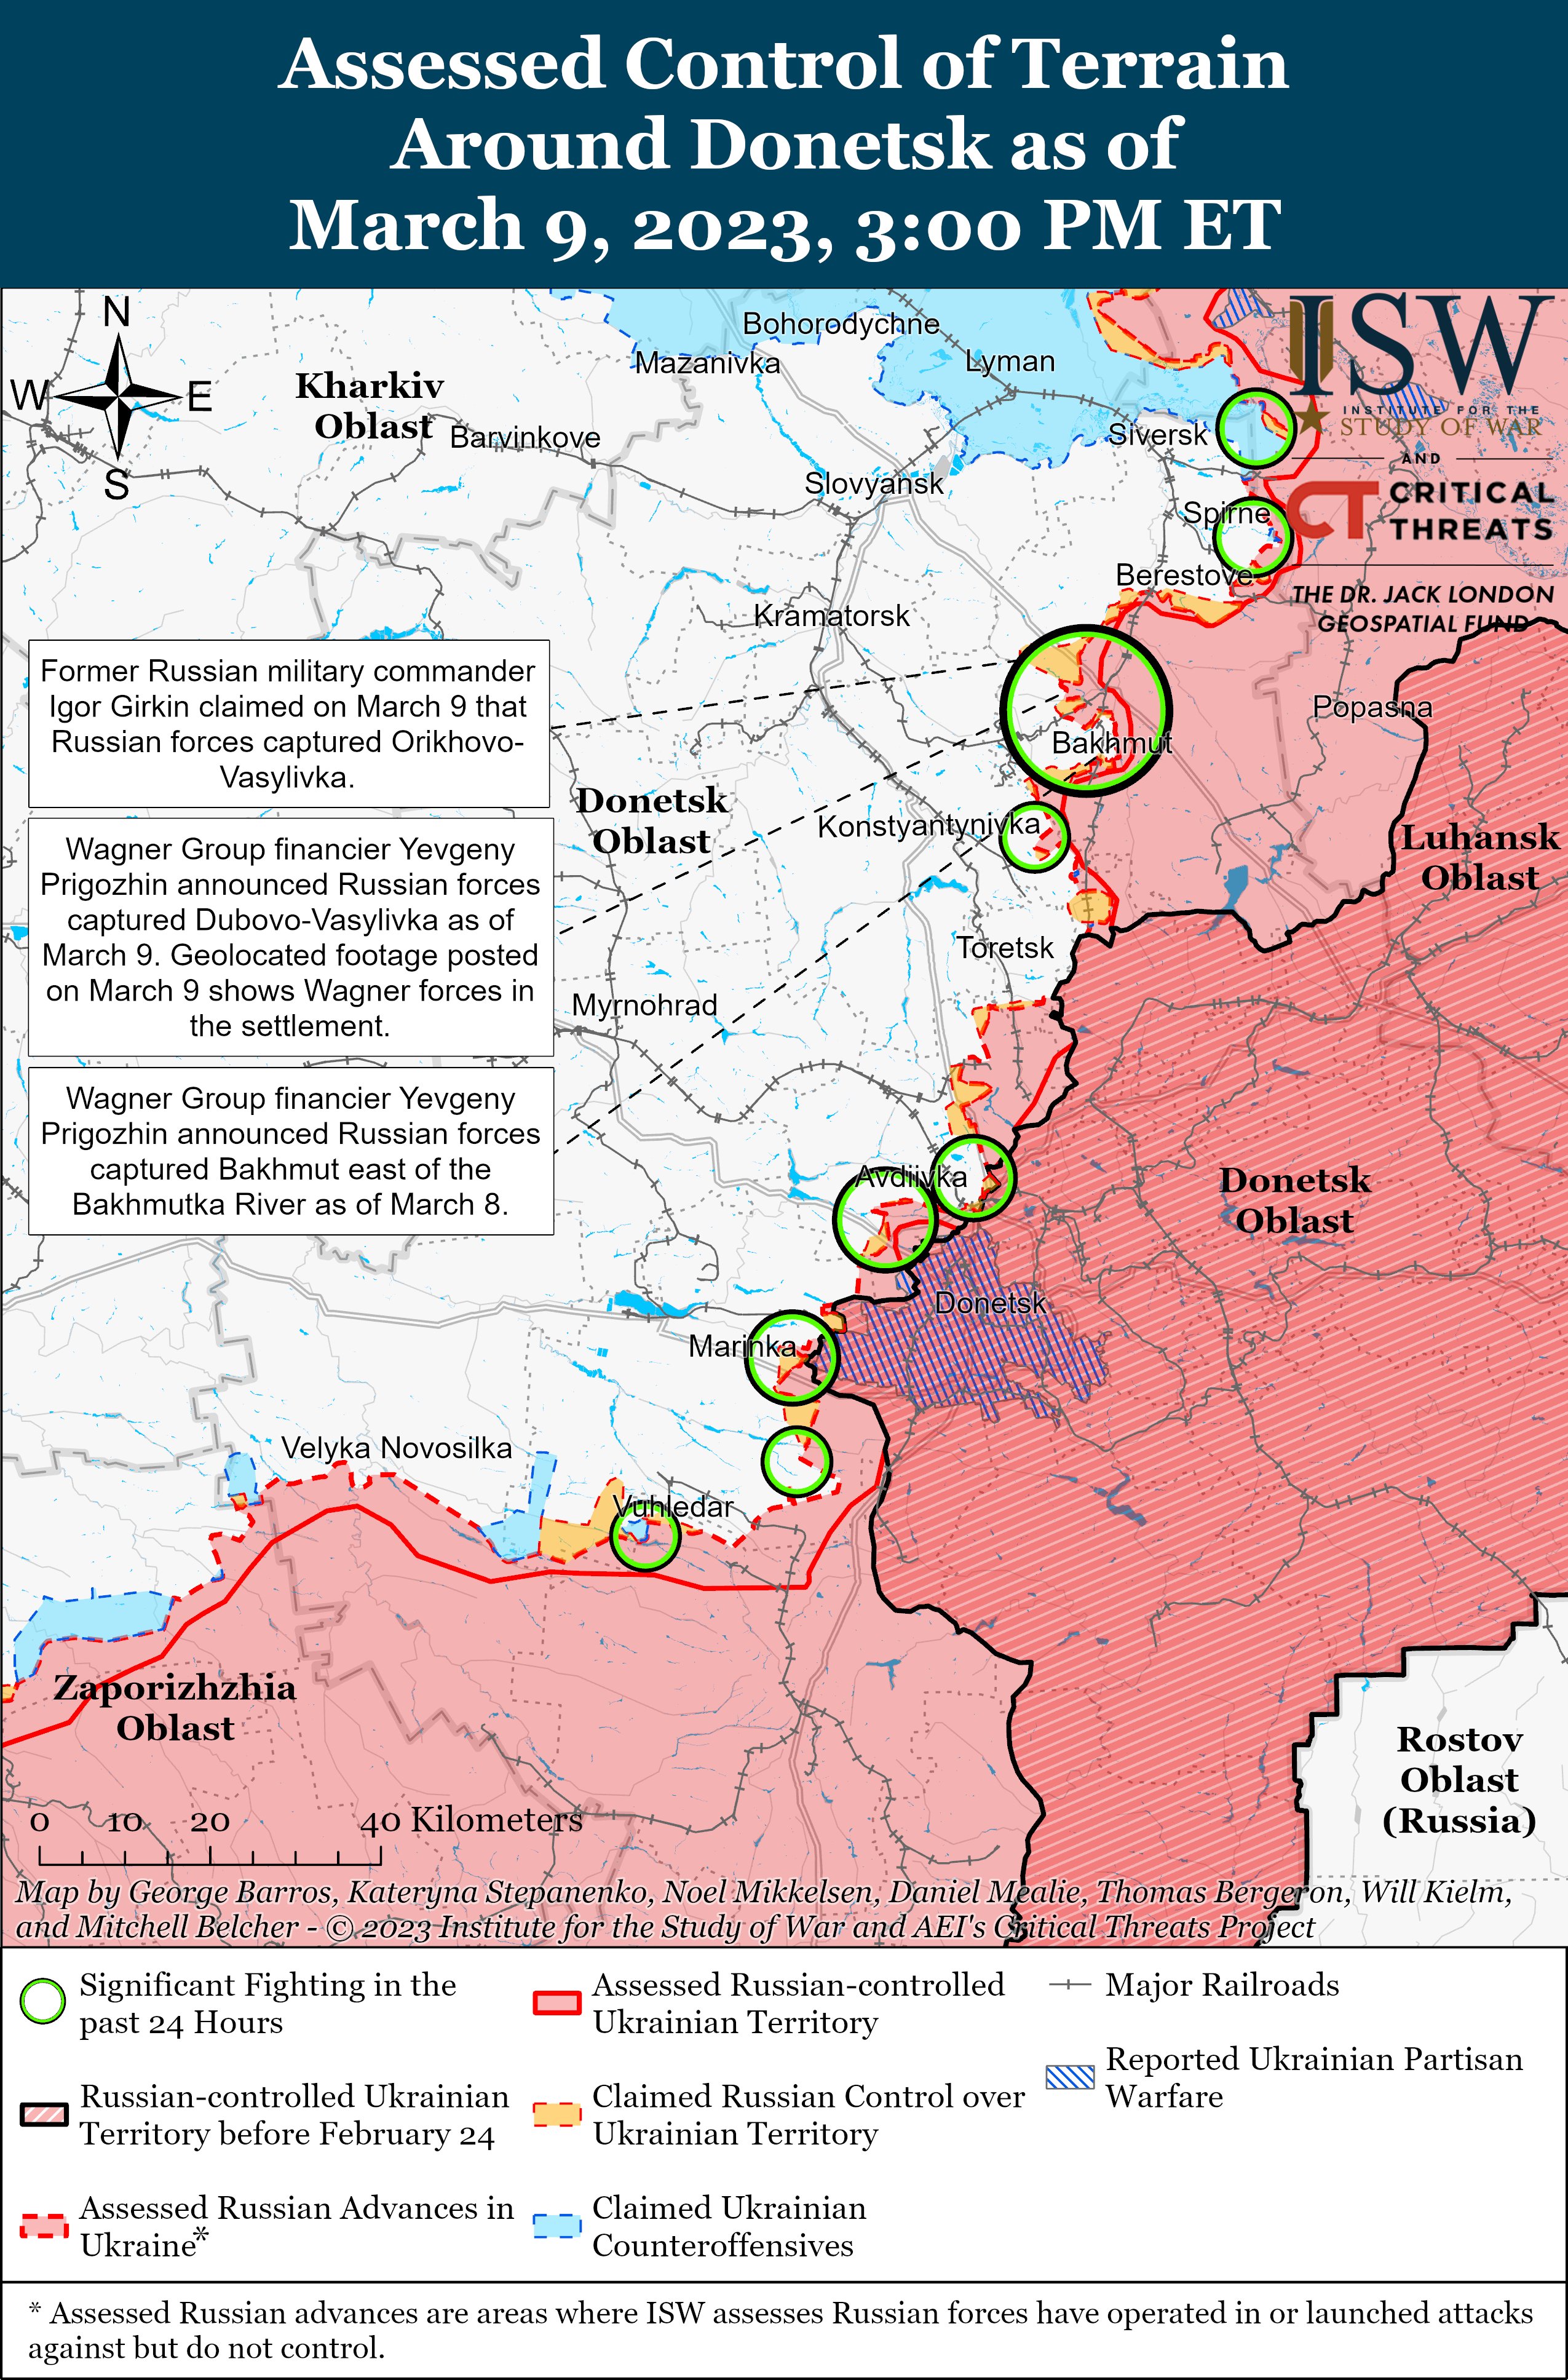 ​Генерал Мурадов готов снова штурмовать Угдедар даже без снарядов: в ISW назвали главную причину атаки